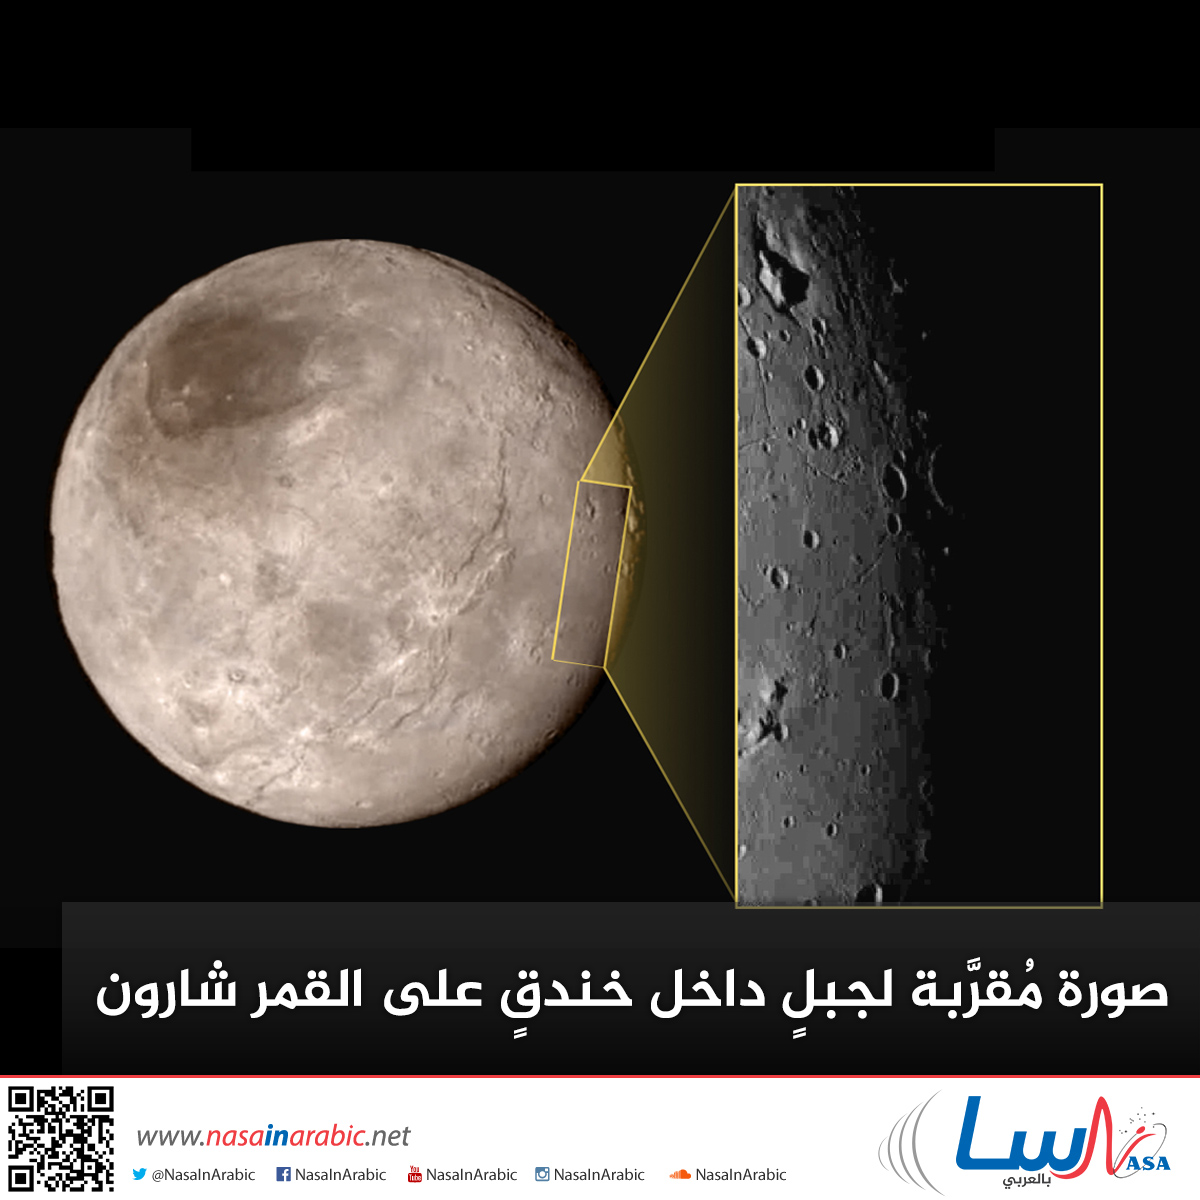 صورة مُقرَّبة لجبلٍ داخل خندقٍ على القمر شارون